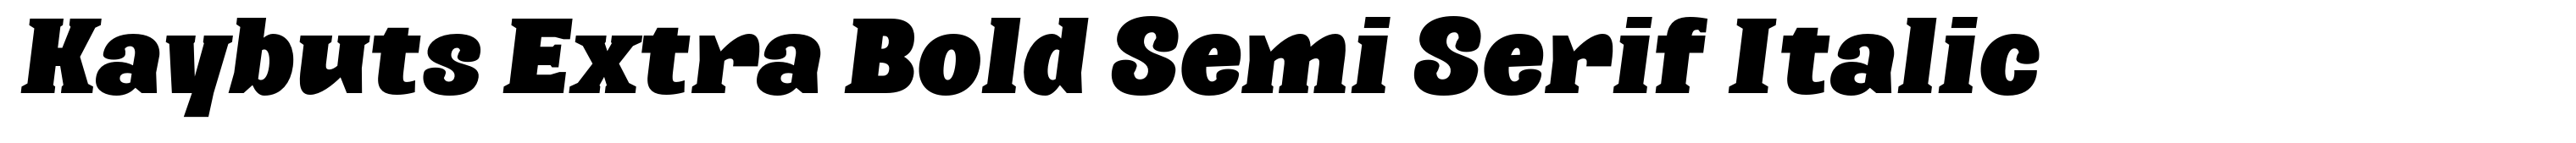 Kaybuts Extra Bold Semi Serif Italic